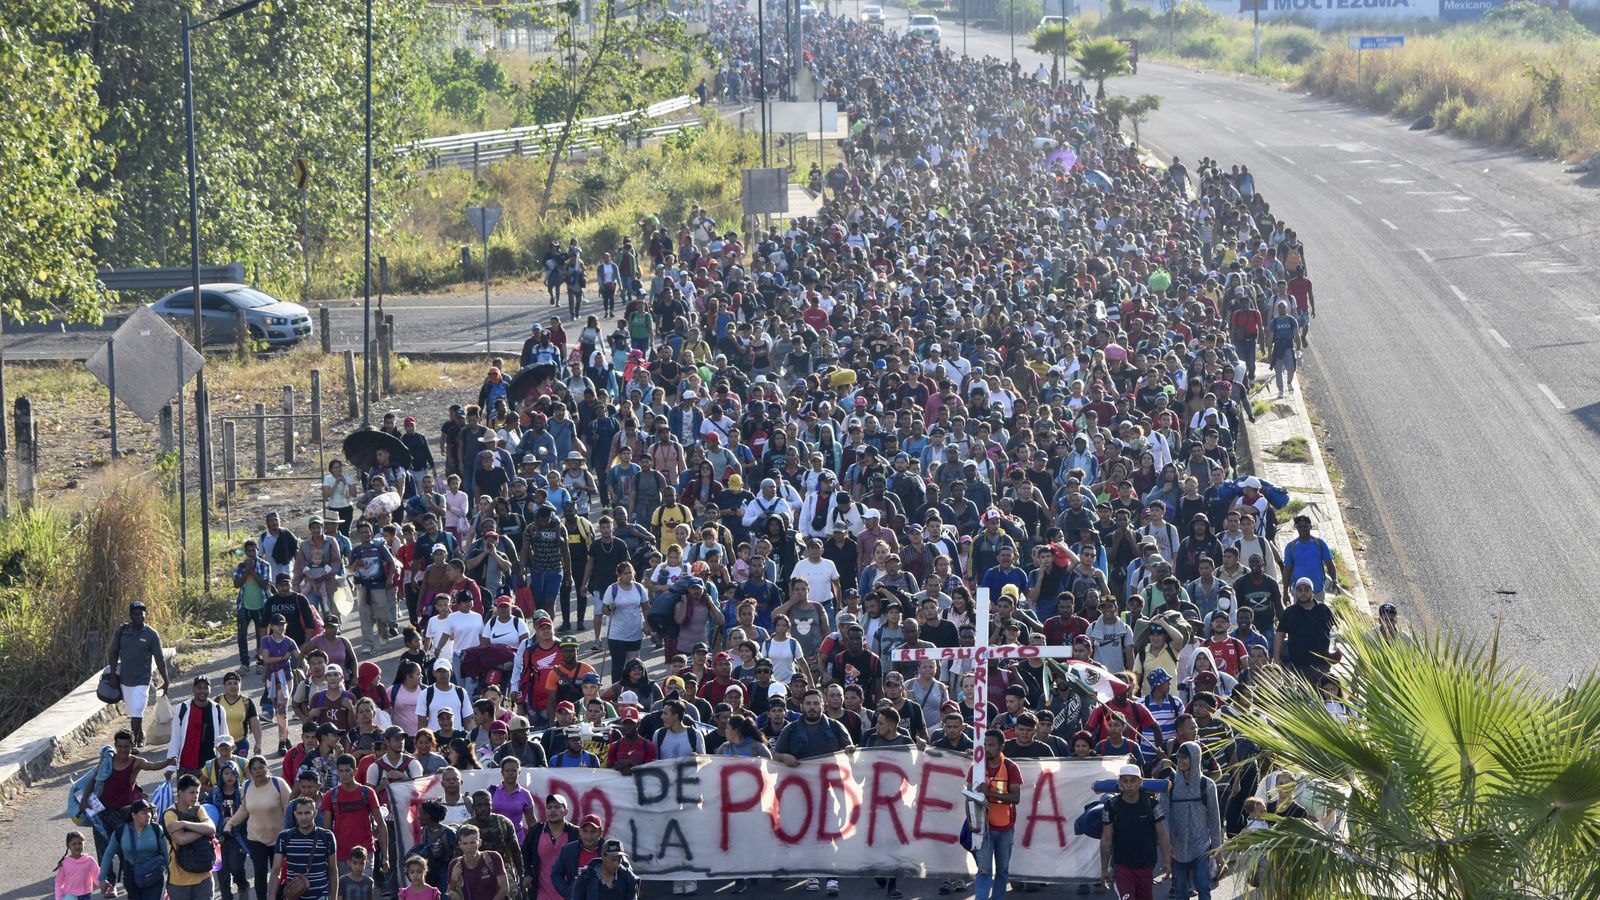 Die Minister Blinken und Mayorkas reisen nach Mexiko-Stadt, um ein weiteres Vorgehen gegen Einwanderer zu organisieren